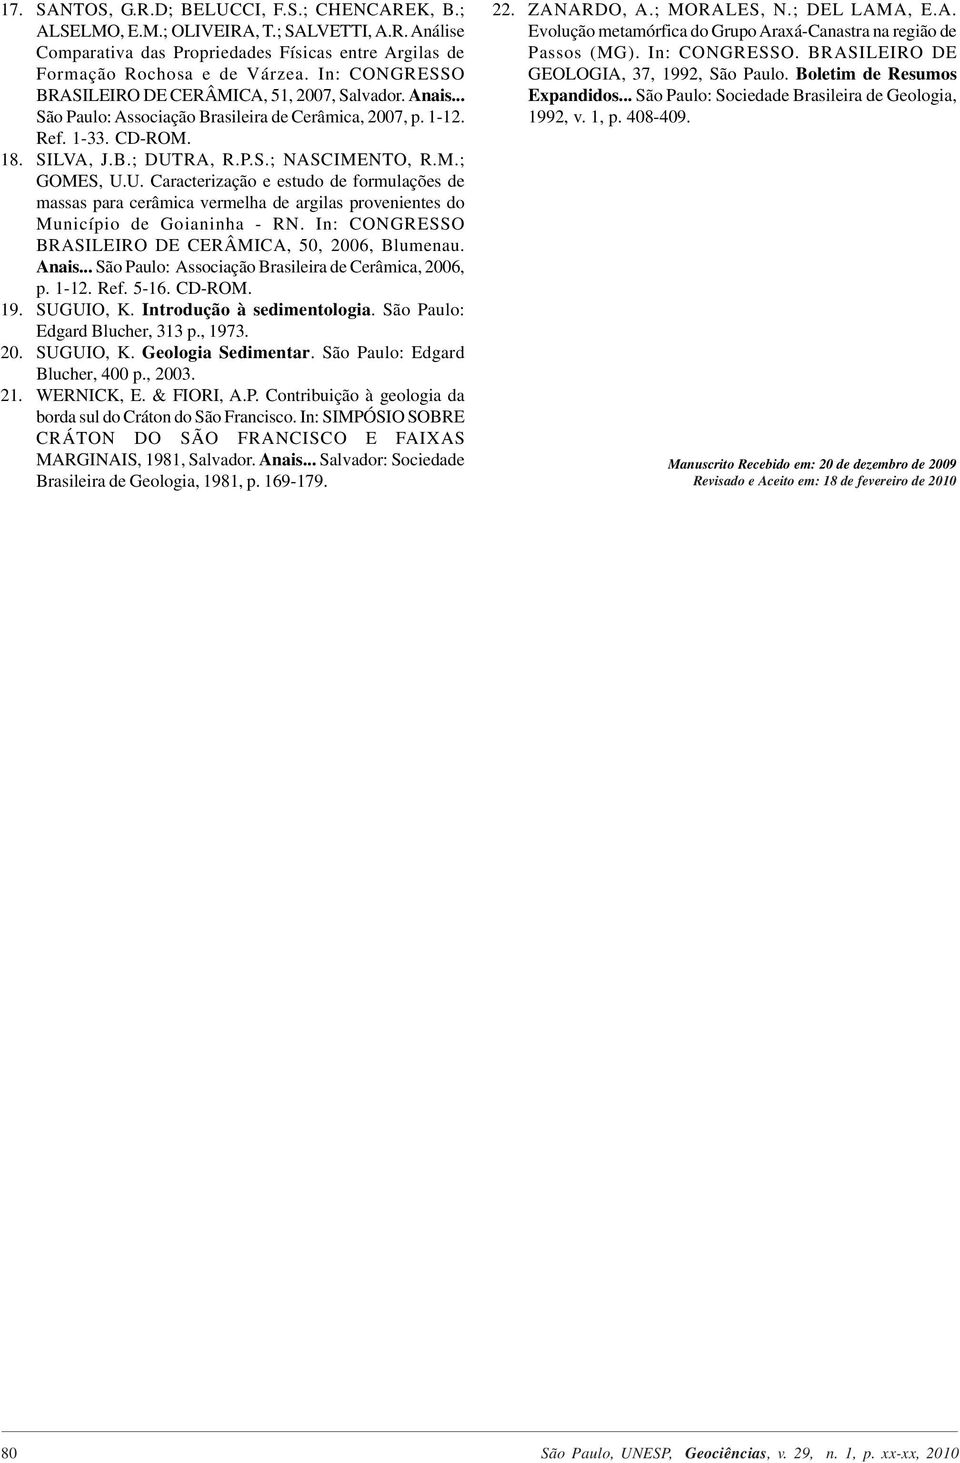 U. Caracterização e estudo de formulações de massas para cerâmica vermelha de argilas provenientes do Município de Goianinha - RN. In: CONGRESSO BRASILEIRO DE CERÂMICA, 50, 2006, Blumenau. Anais.